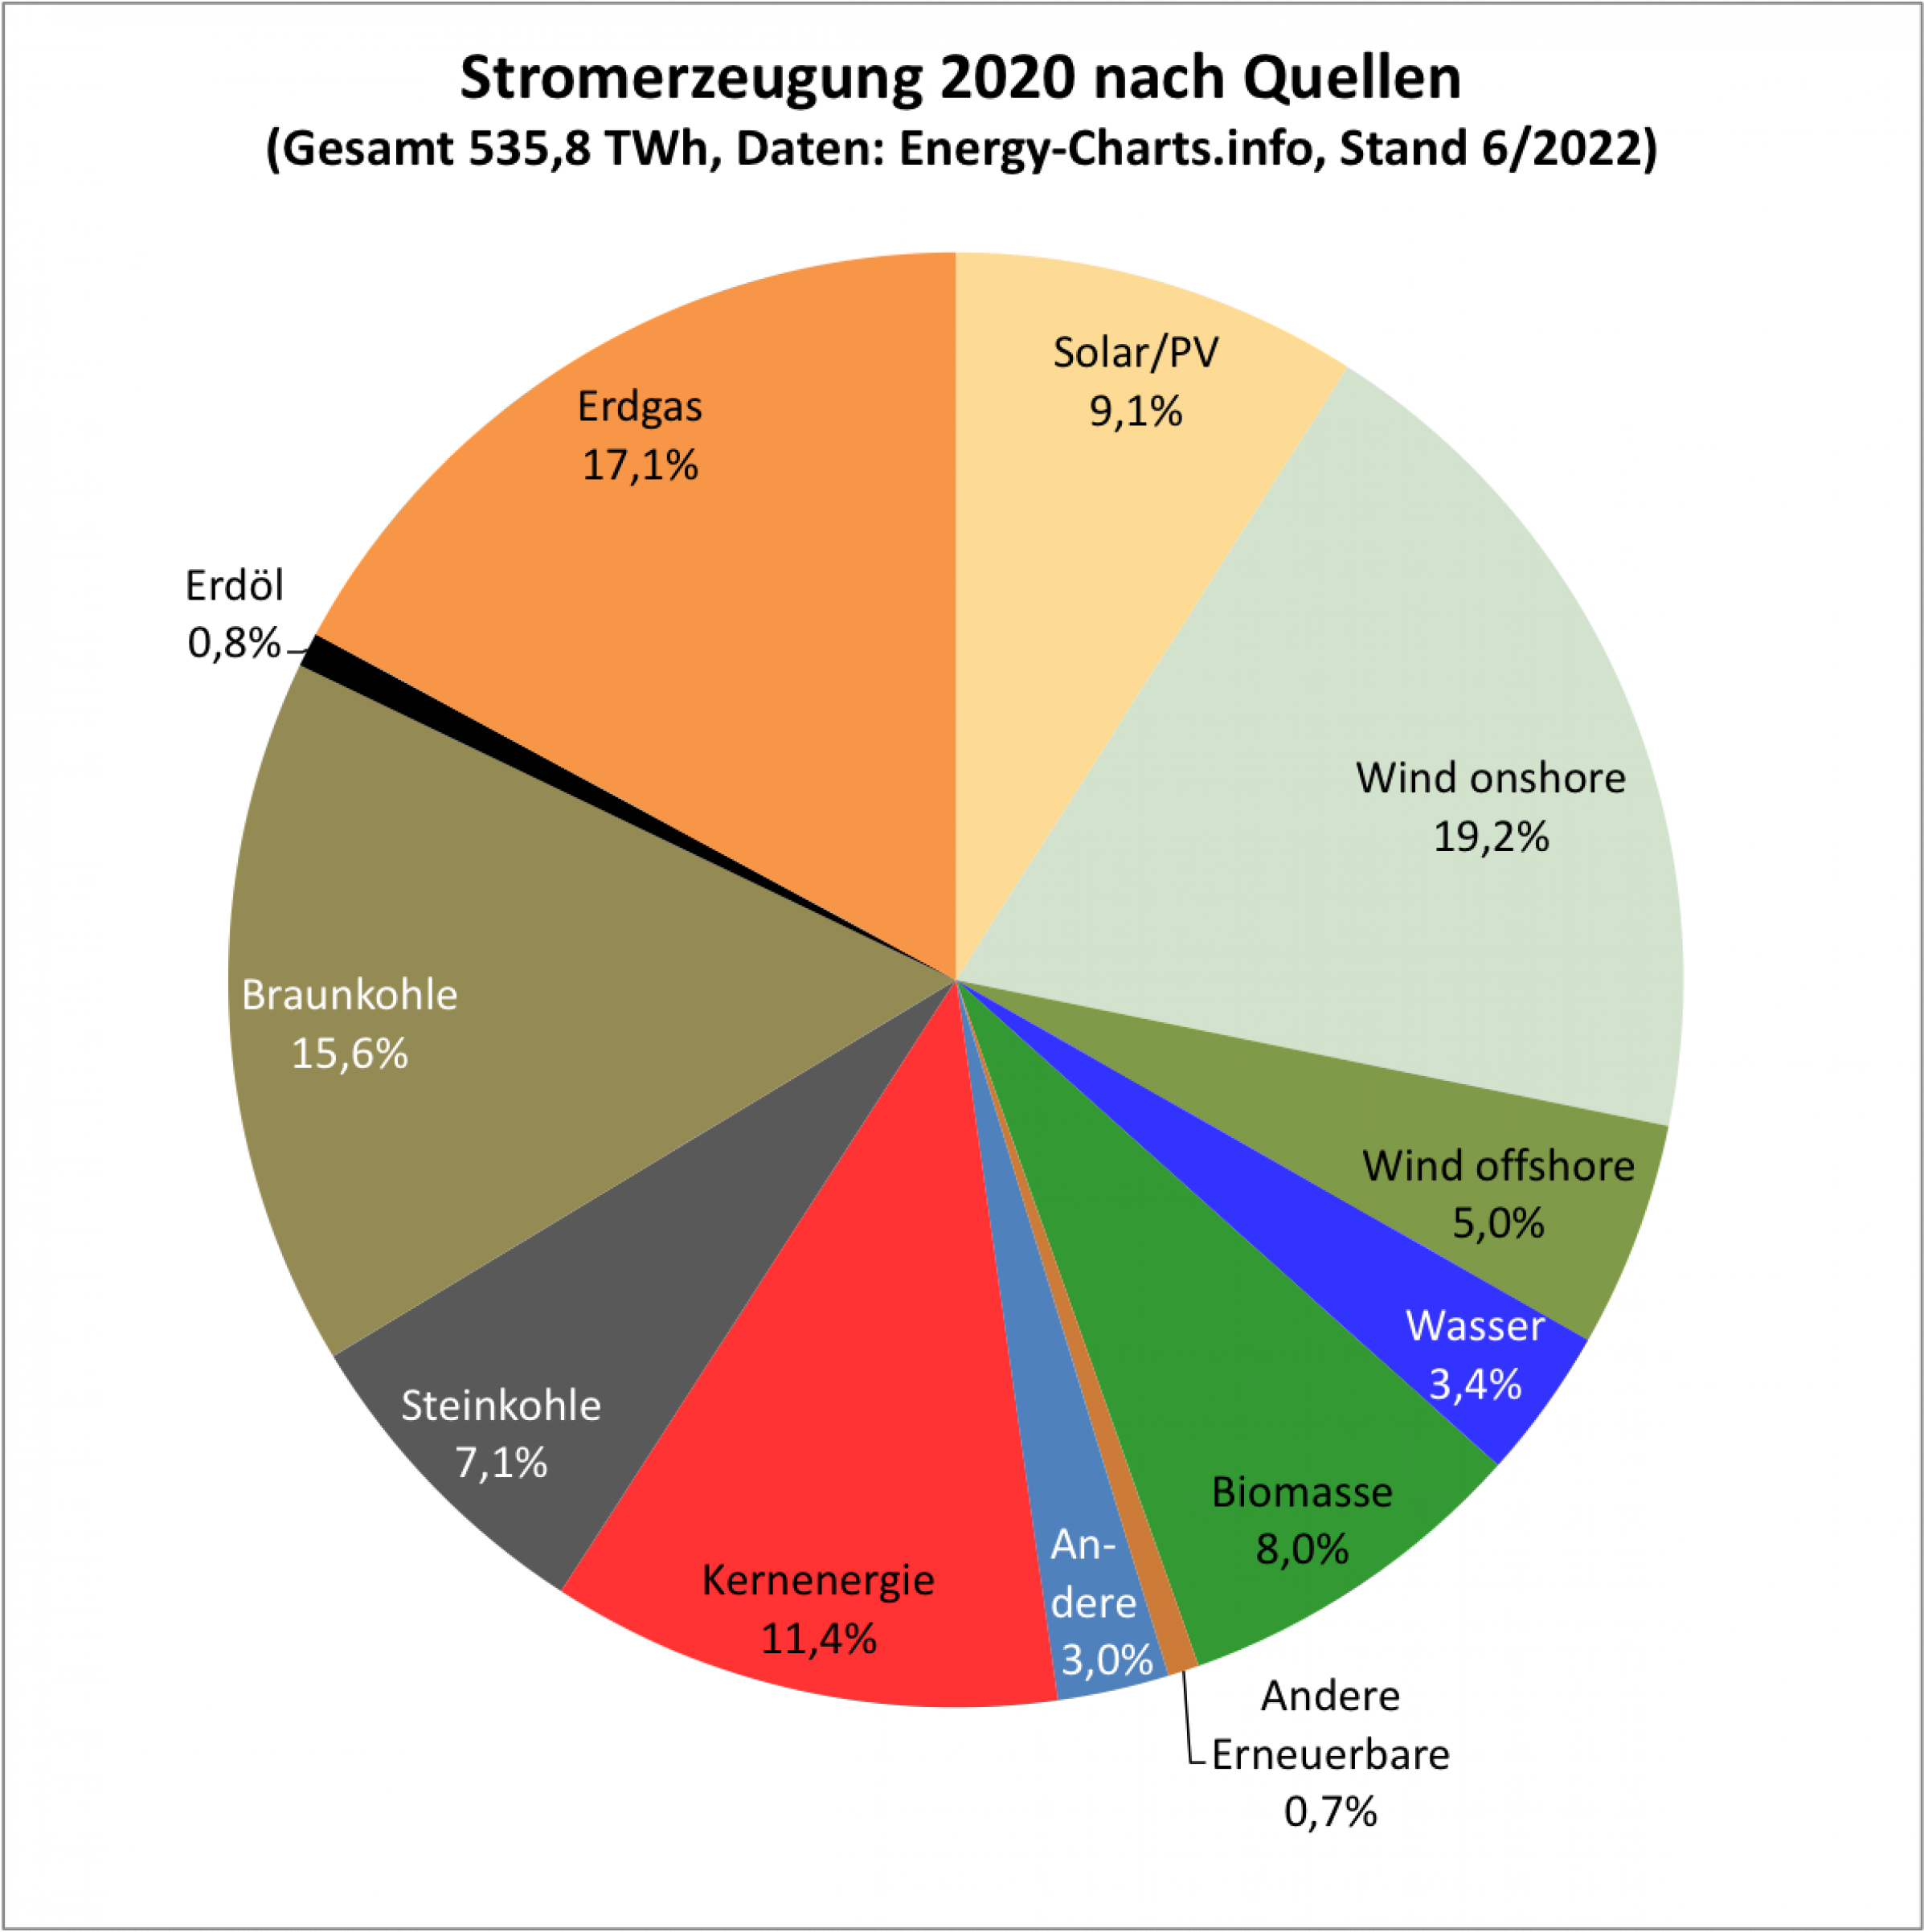 Die Grafik zeigt als Kuchendiagramm die Anteile der Energiequellen, aus denen 2020 Strom gewonnen wurde: Die wichtigsten sind: Windkraft onshore (19,2%), Erdgas (17,1%), Braunkohle (15,6%), Kernenergie (11,4%), Solarenergie (9,1%), Steinkohle (7,1%) und Wind offshore (5%).  Die Zahlen beruhen auf Angaben von Energy-Charts.info; der Gesamtverbrauch lag 2020 bei 536 Terawattstunden.